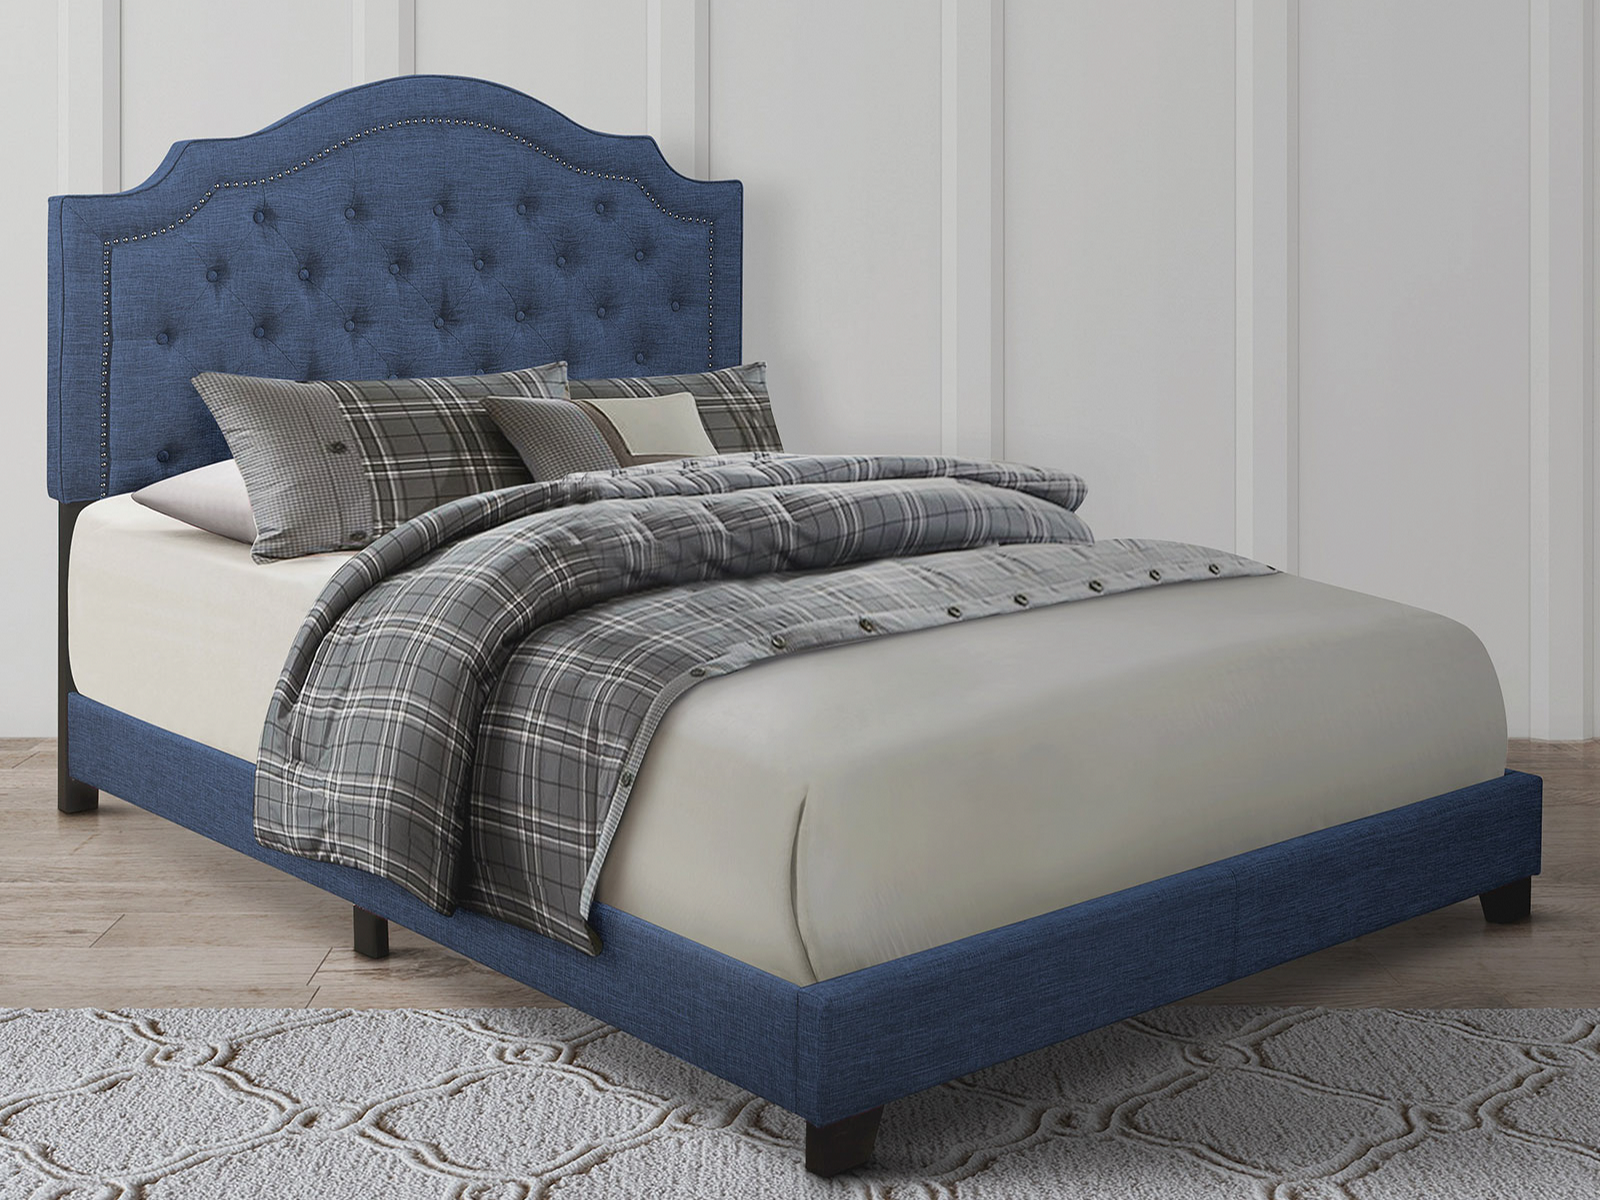 Homelegance Upholstered Bed Set | Queen | Harley Bed Frame & Headboard | Blue